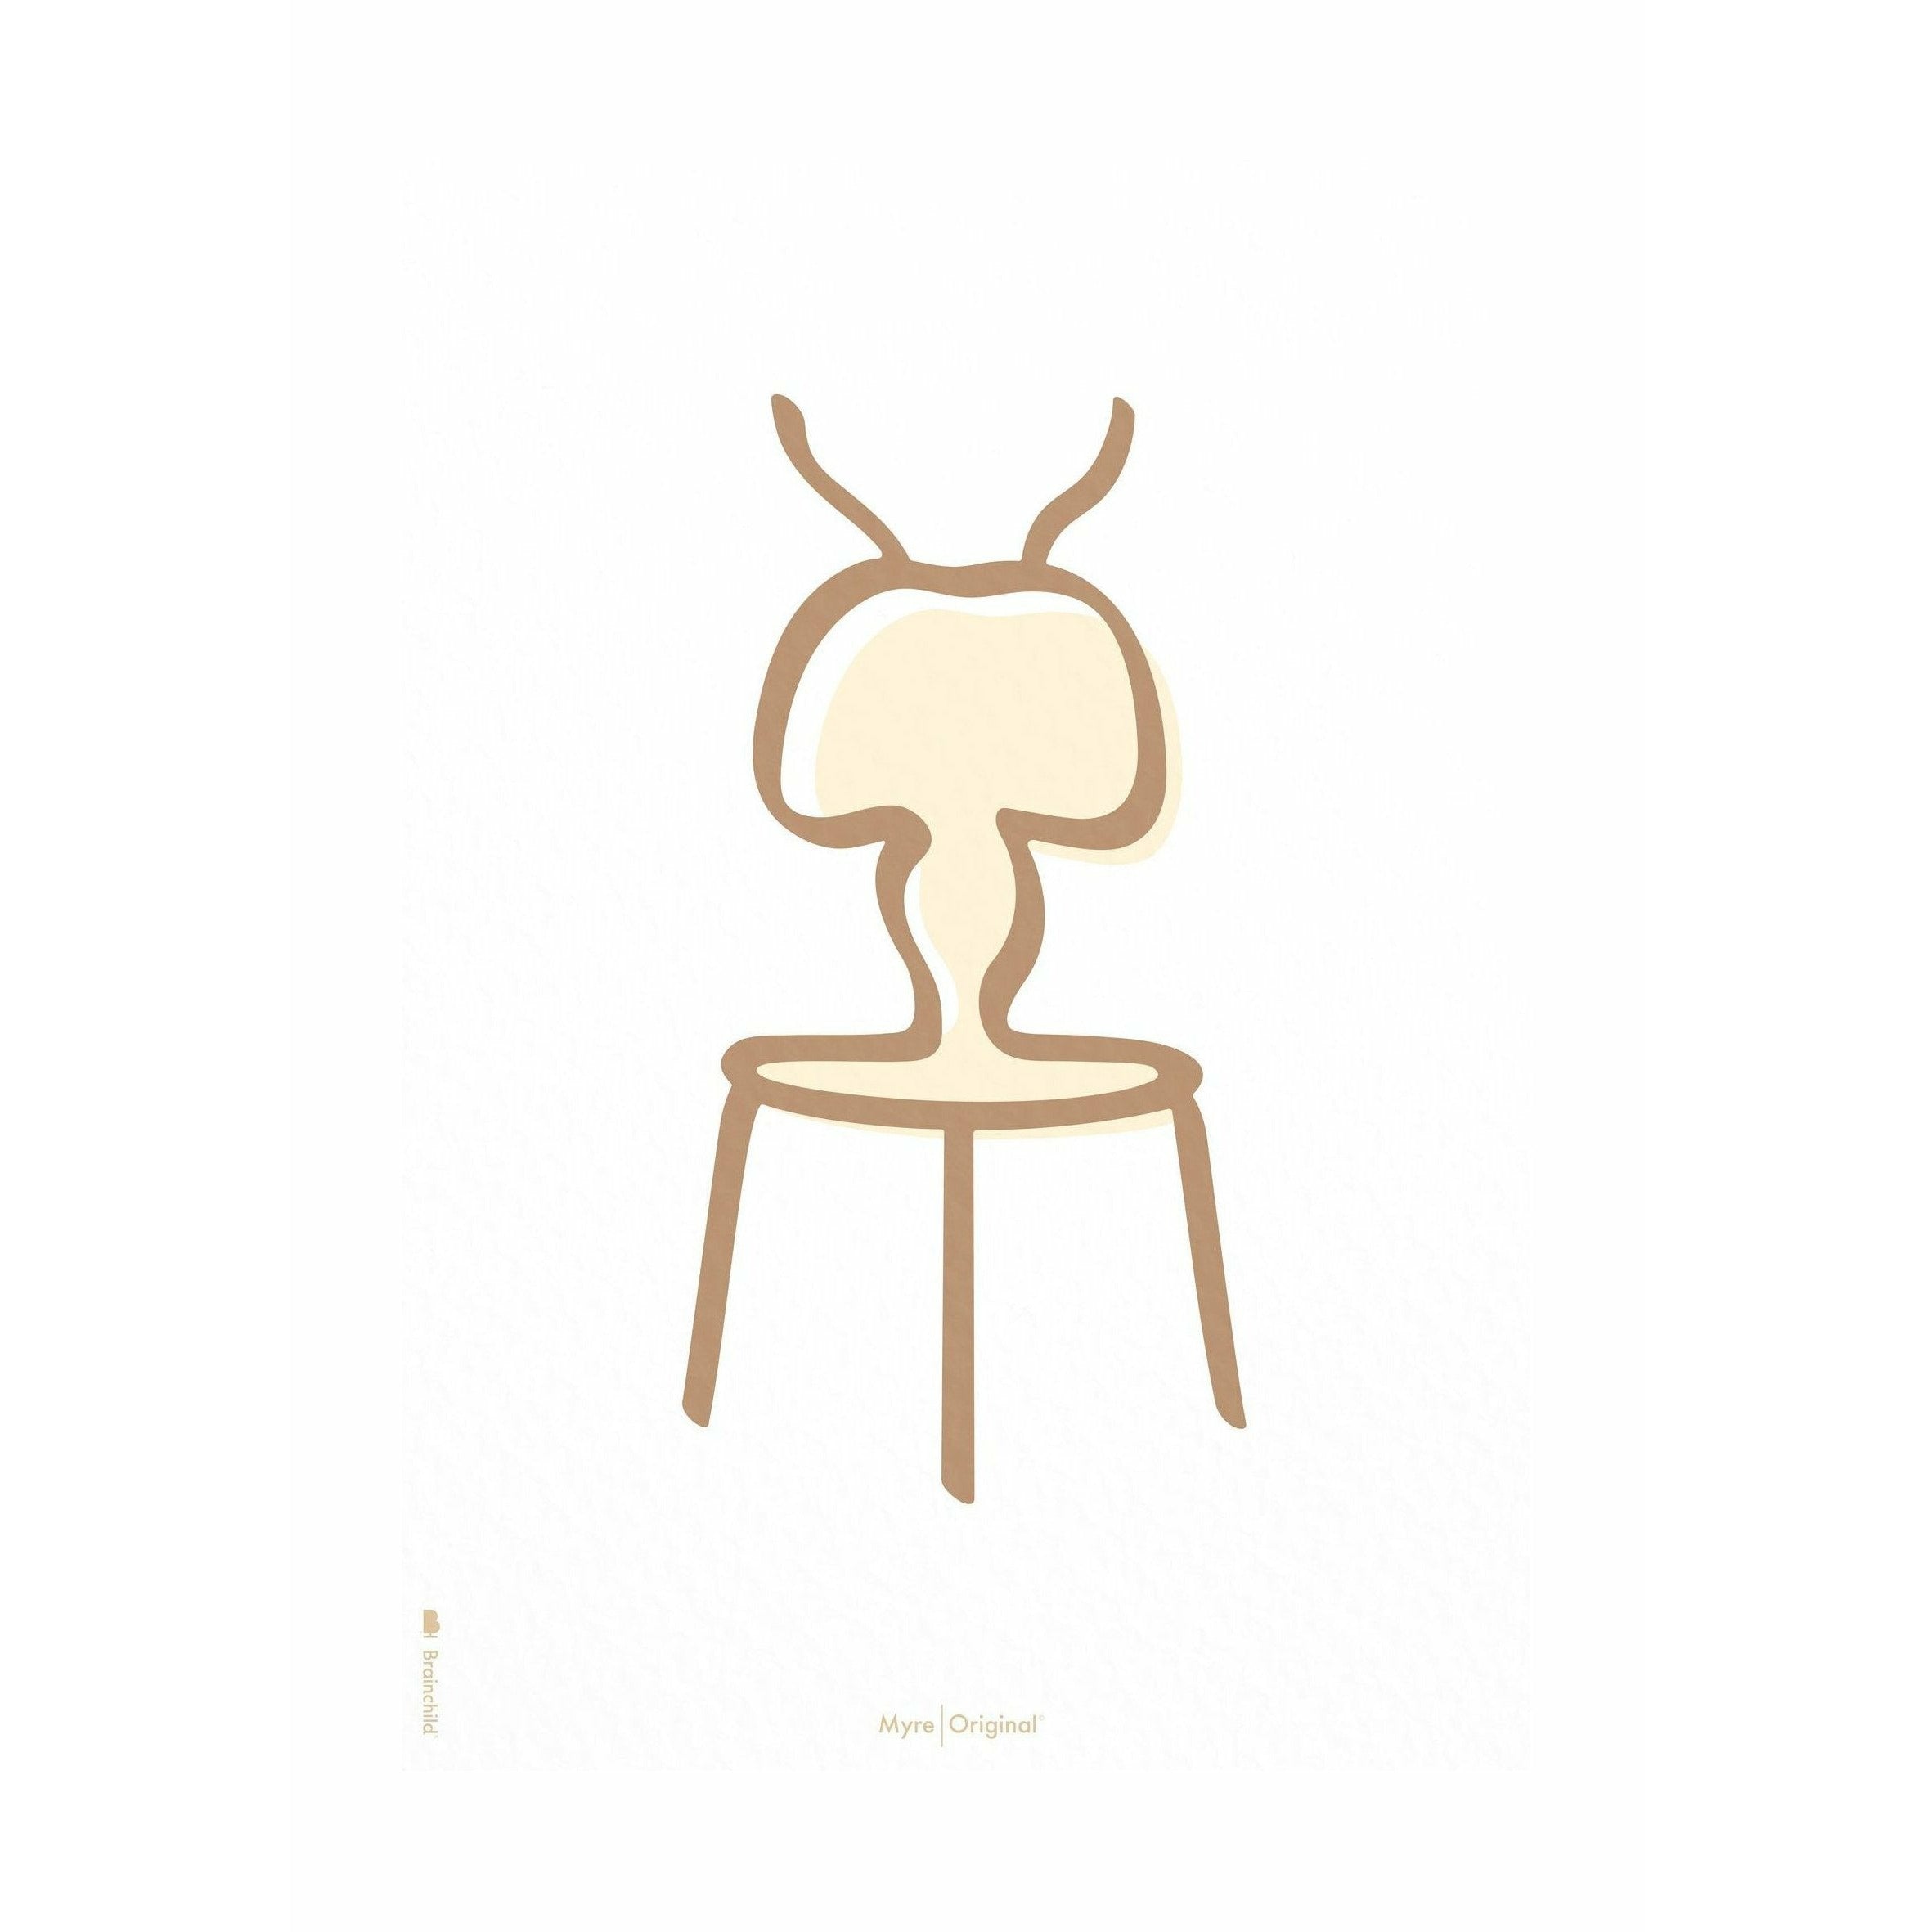 Plakat linii mrówek bez ramy 30x40 cm, białe tło